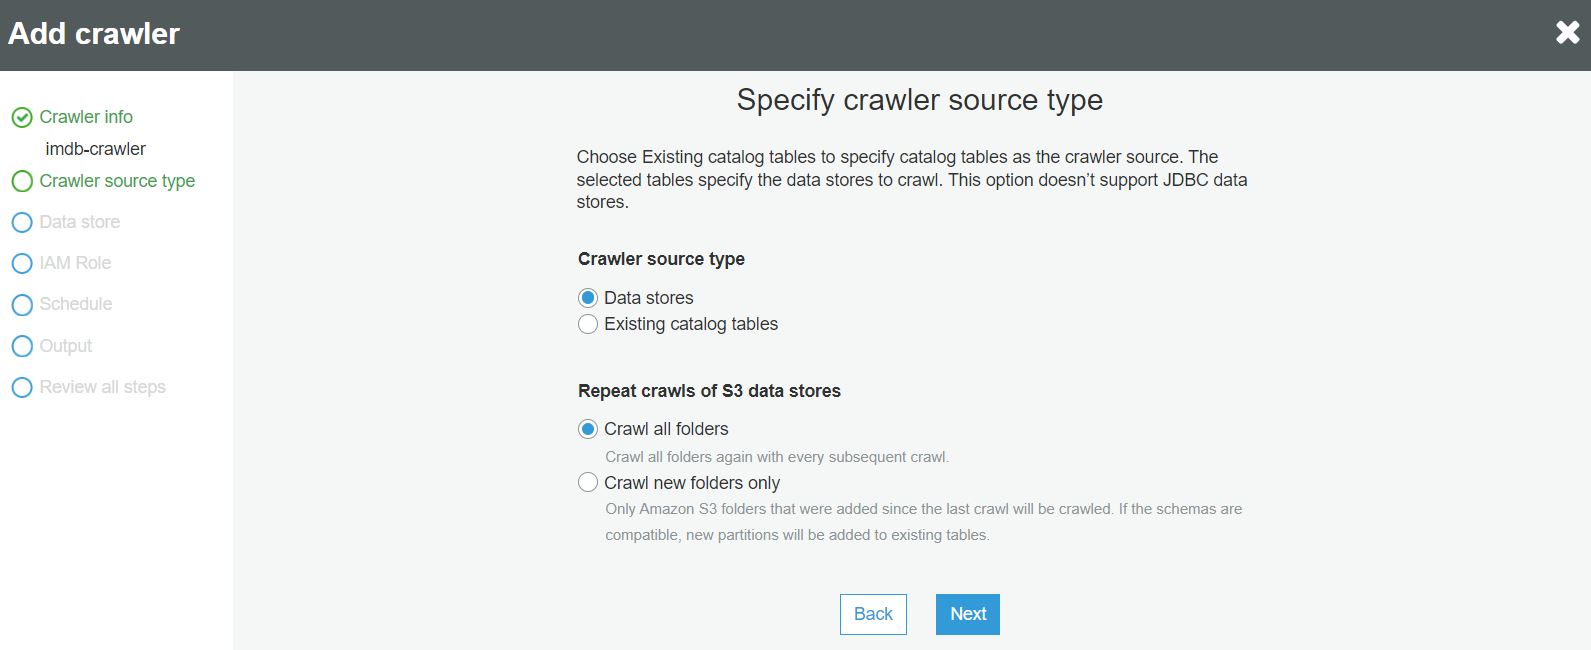 Crawler source type